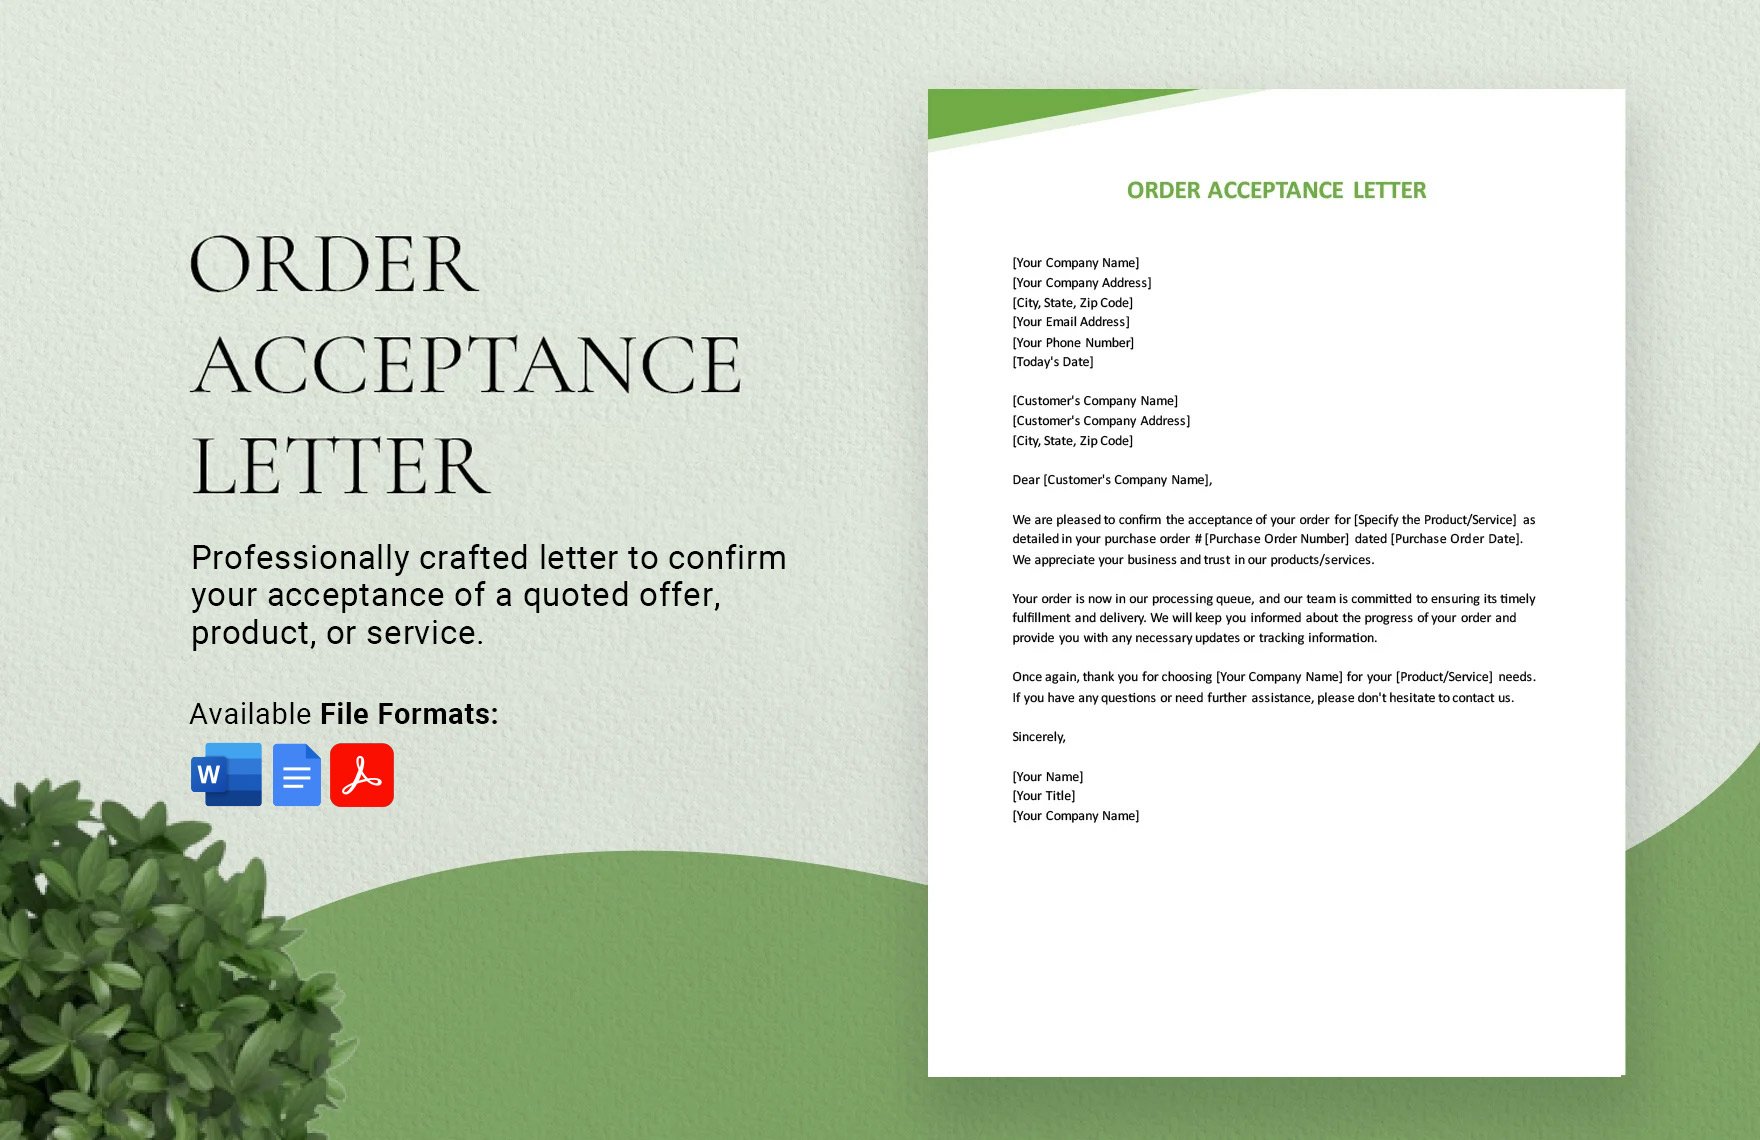 Order Acceptance Letter